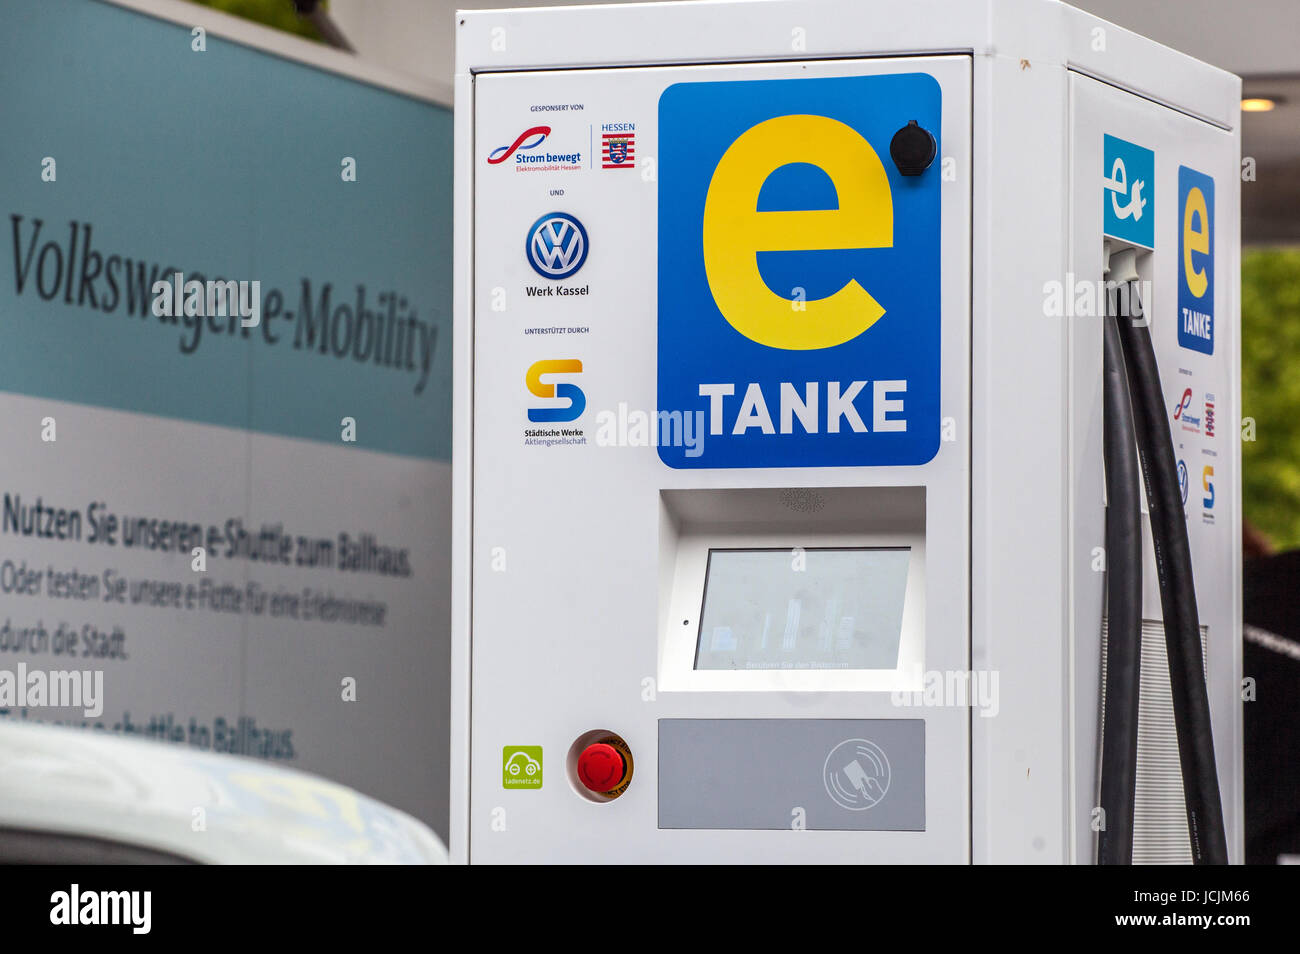 Station de charge pour voitures électriques, Volkswagen, E la mobilité, Kassel, Allemagne Banque D'Images